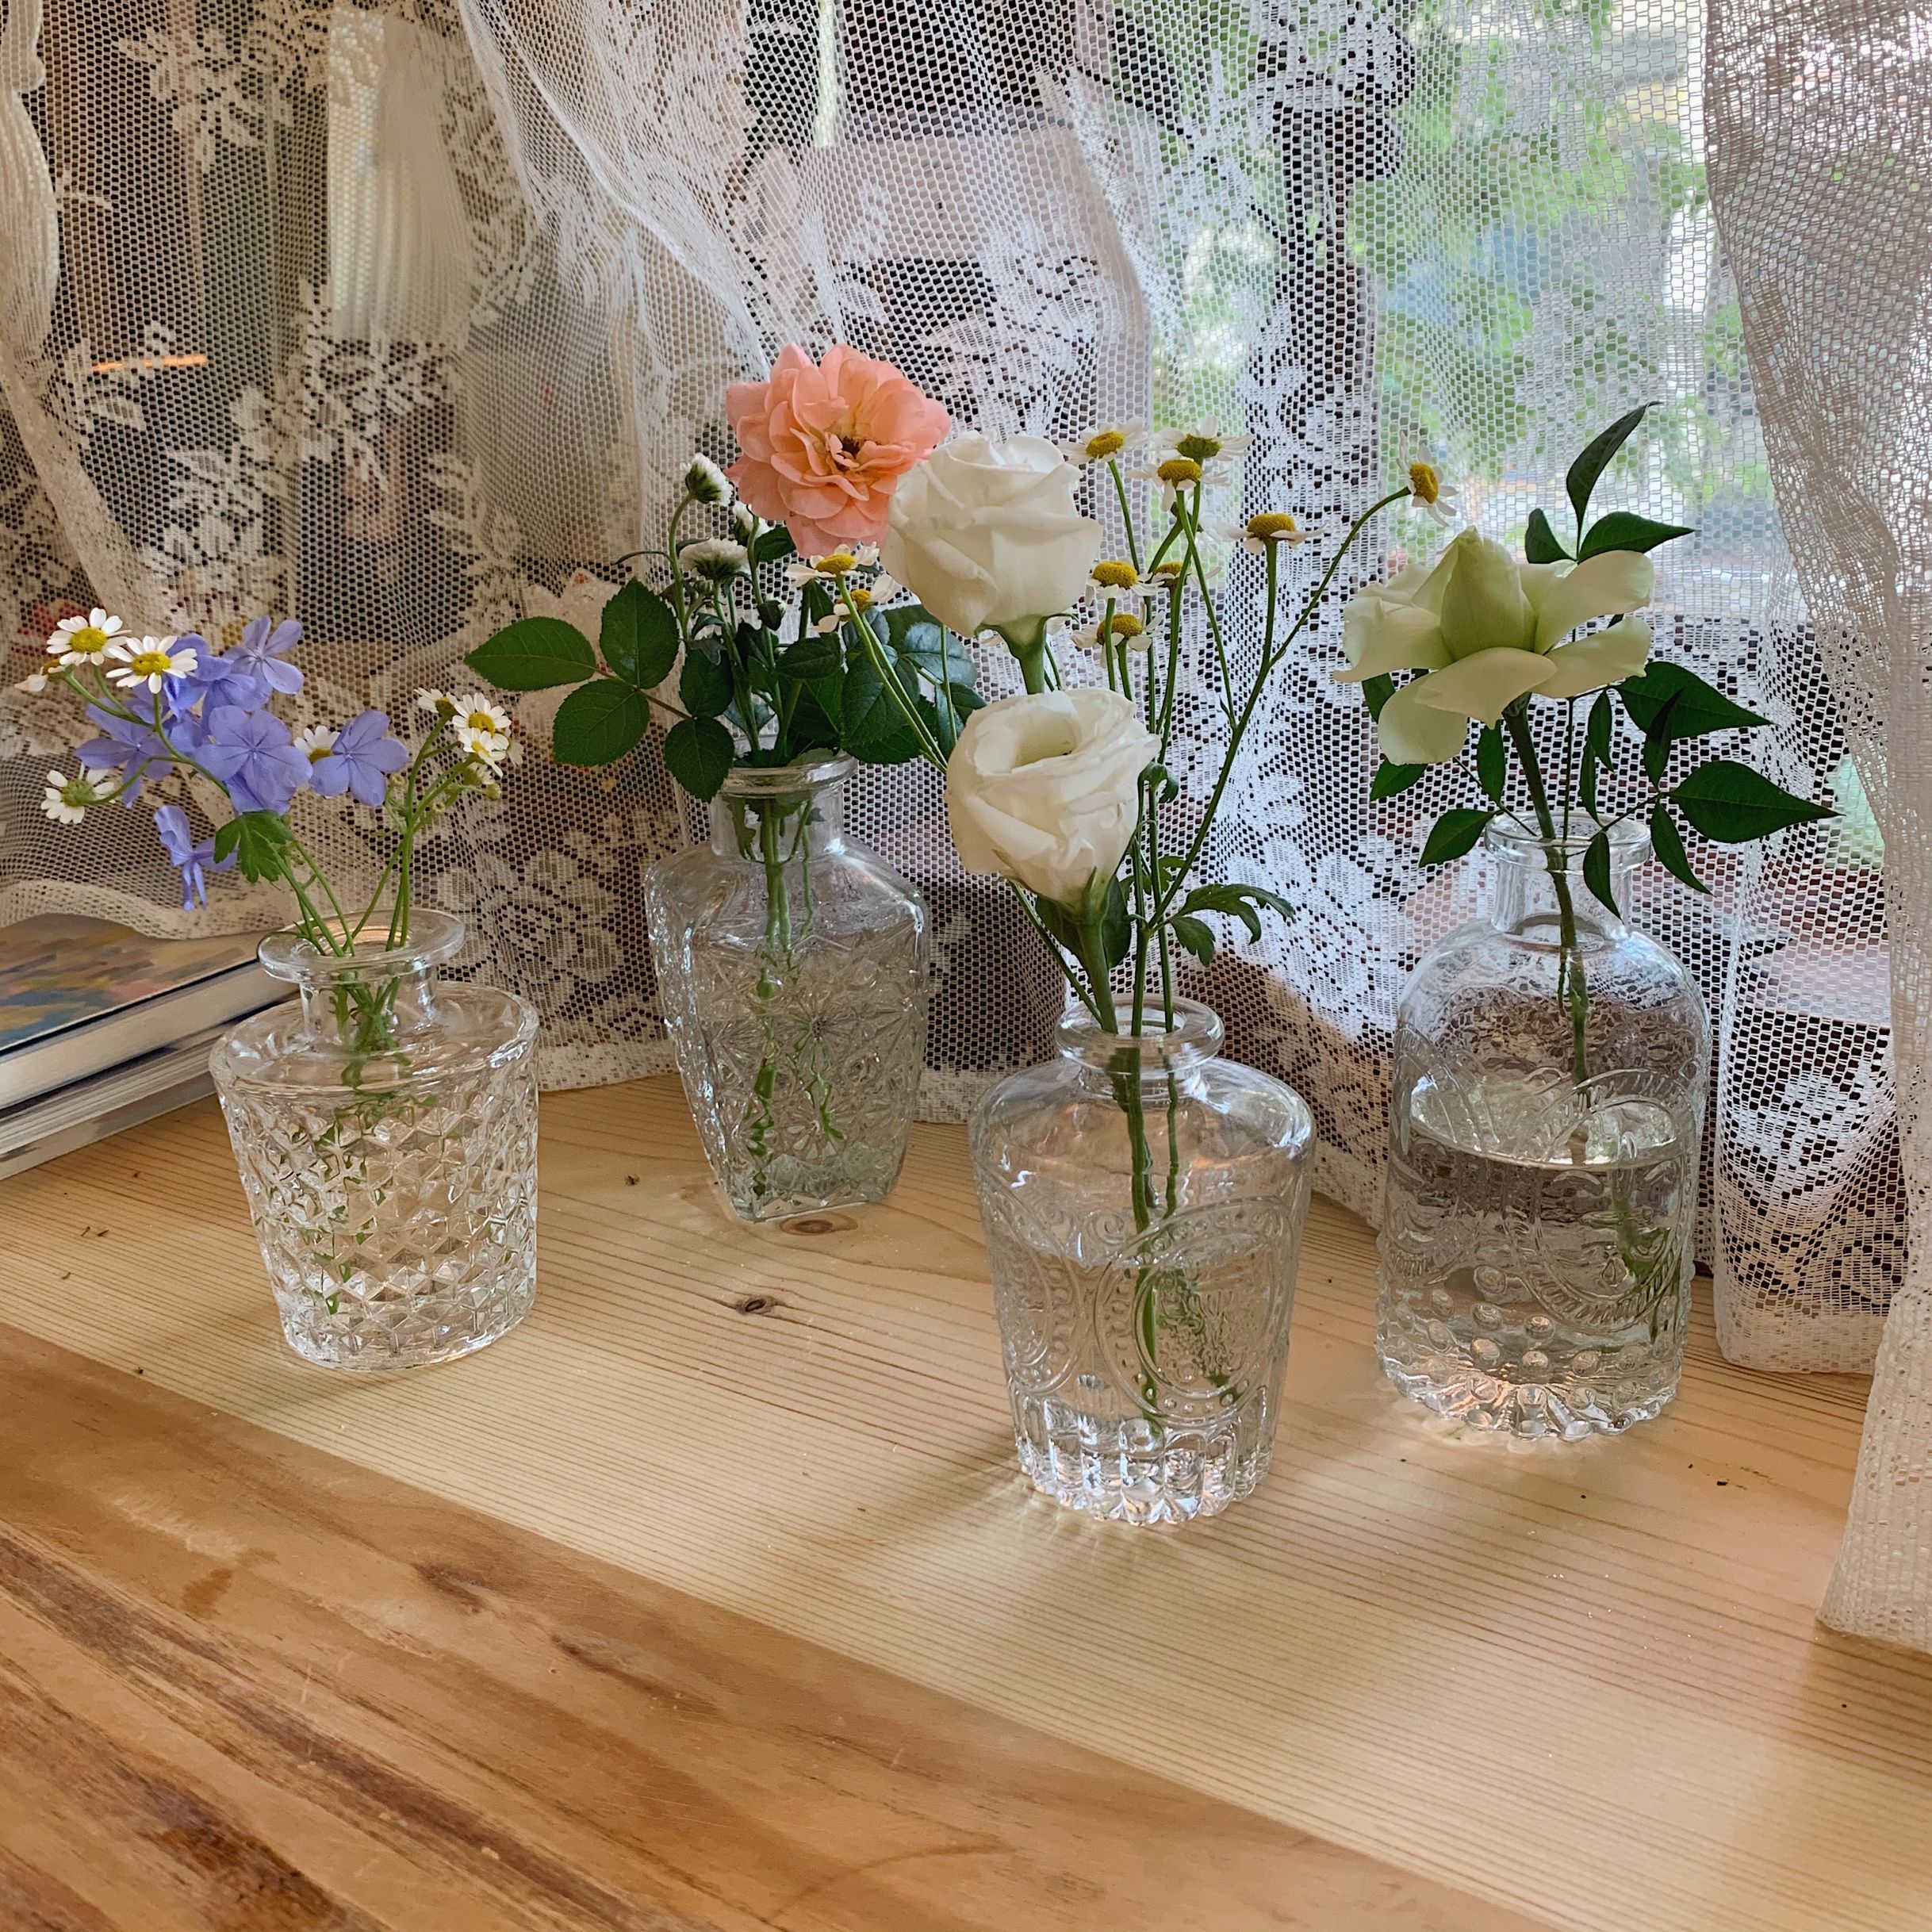 少女心放映室 ins復古透明浮雕玻璃小花瓶 學生房間綠植裝飾擺件